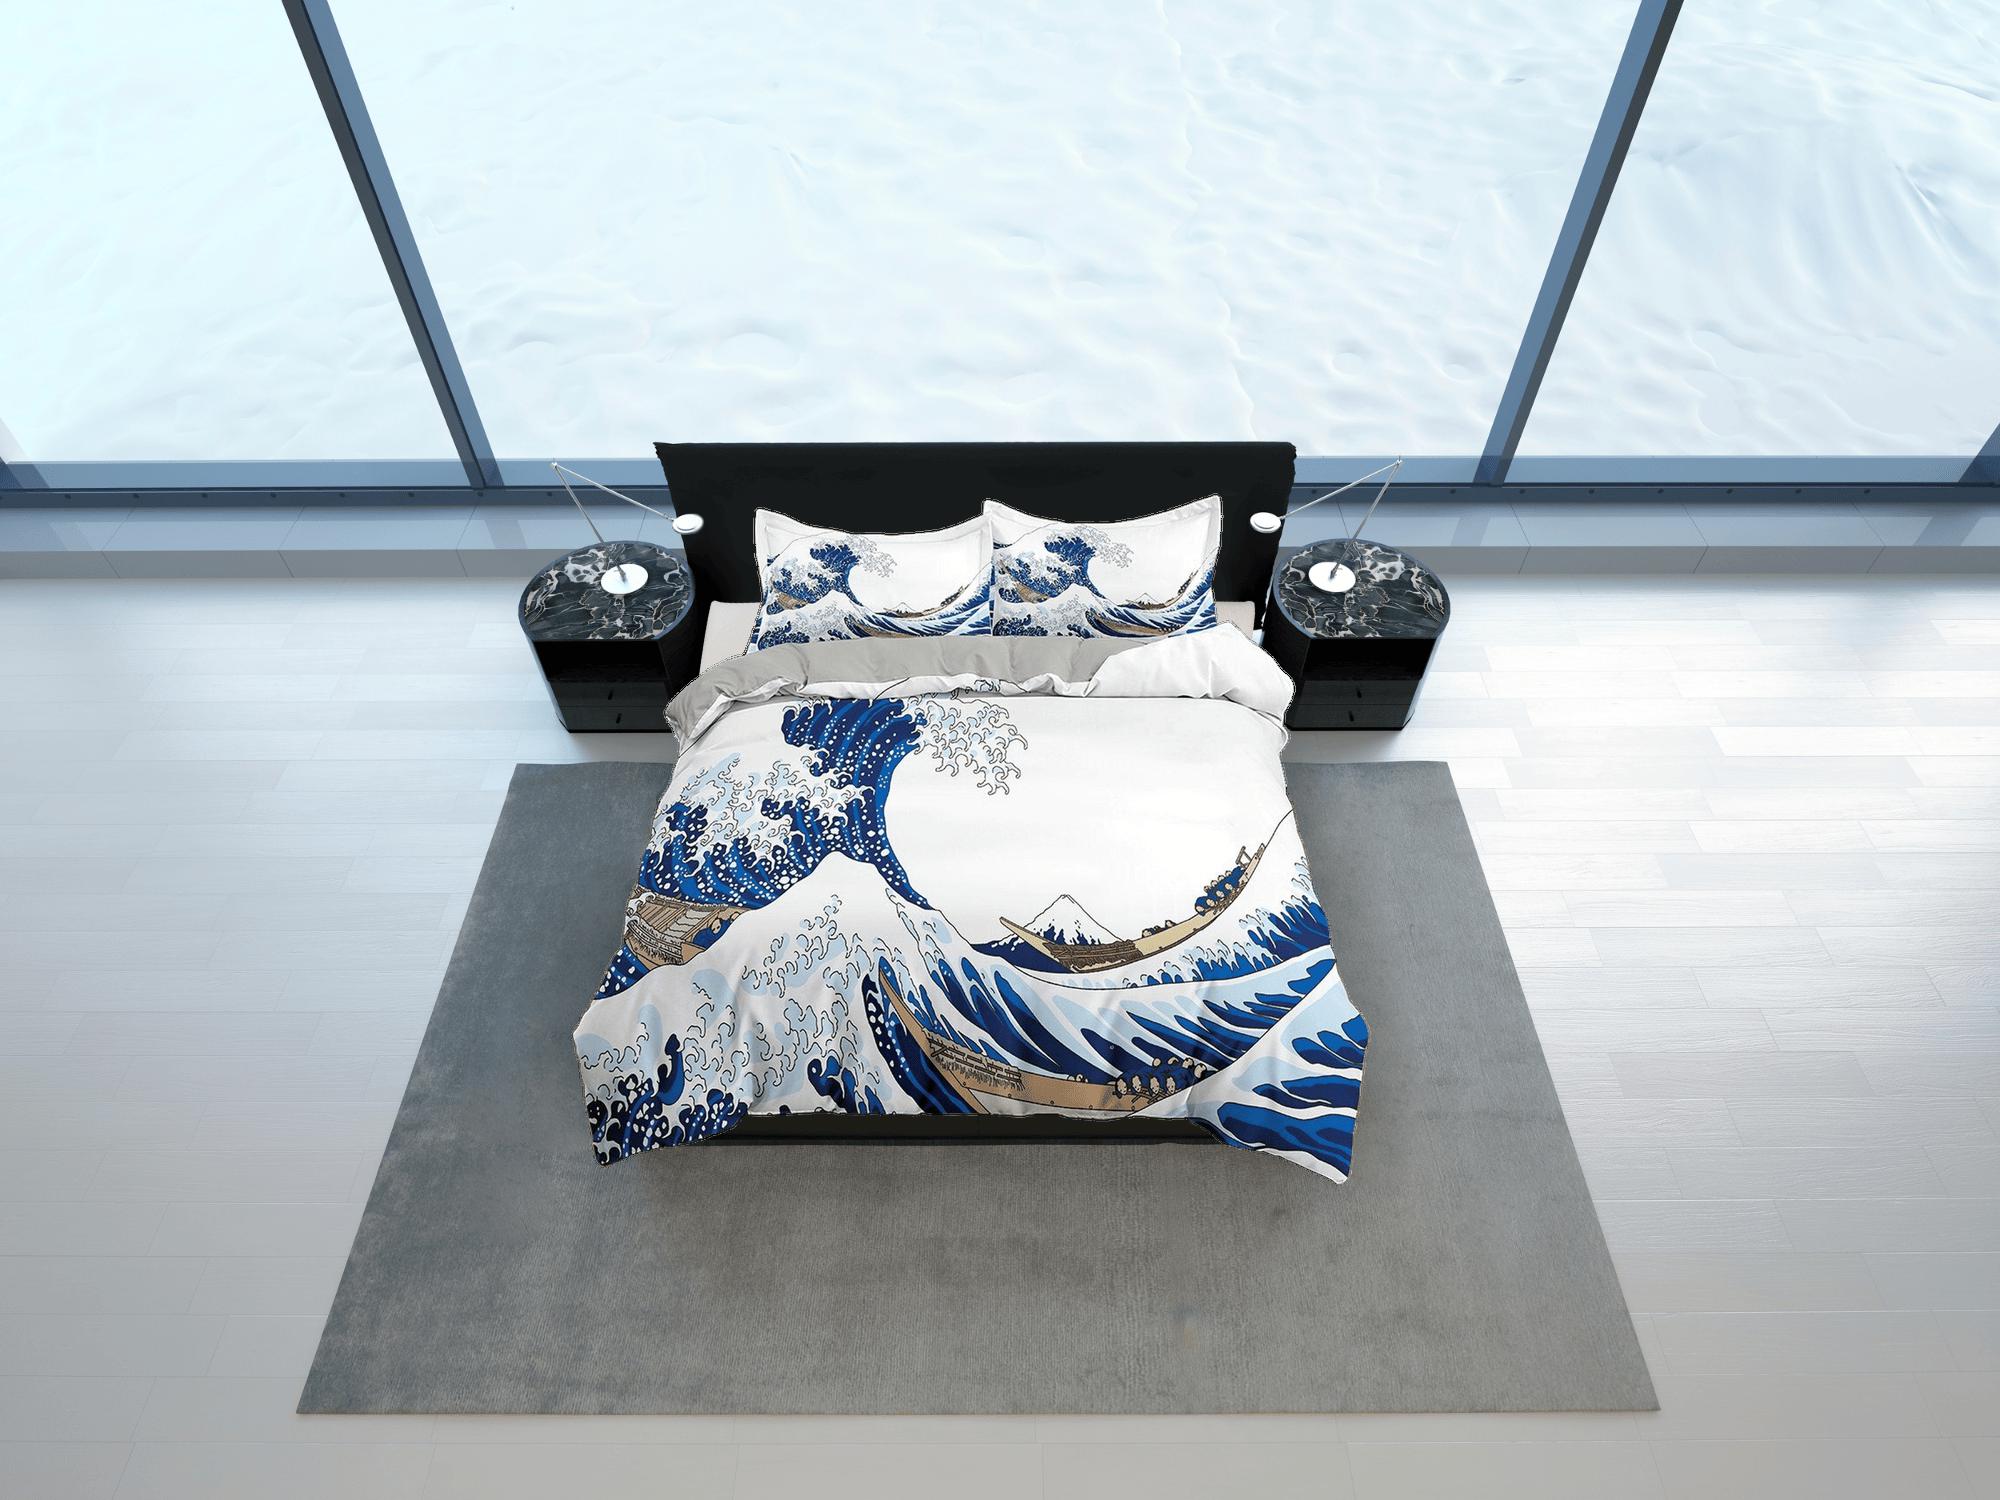 daintyduvet Great Wave Bedding, Japanese Bedding, Japanese Art Duvet Cover Set, Bed Coverlet, Aesthetic Duvet Cover King Queen Full Twin Double Single